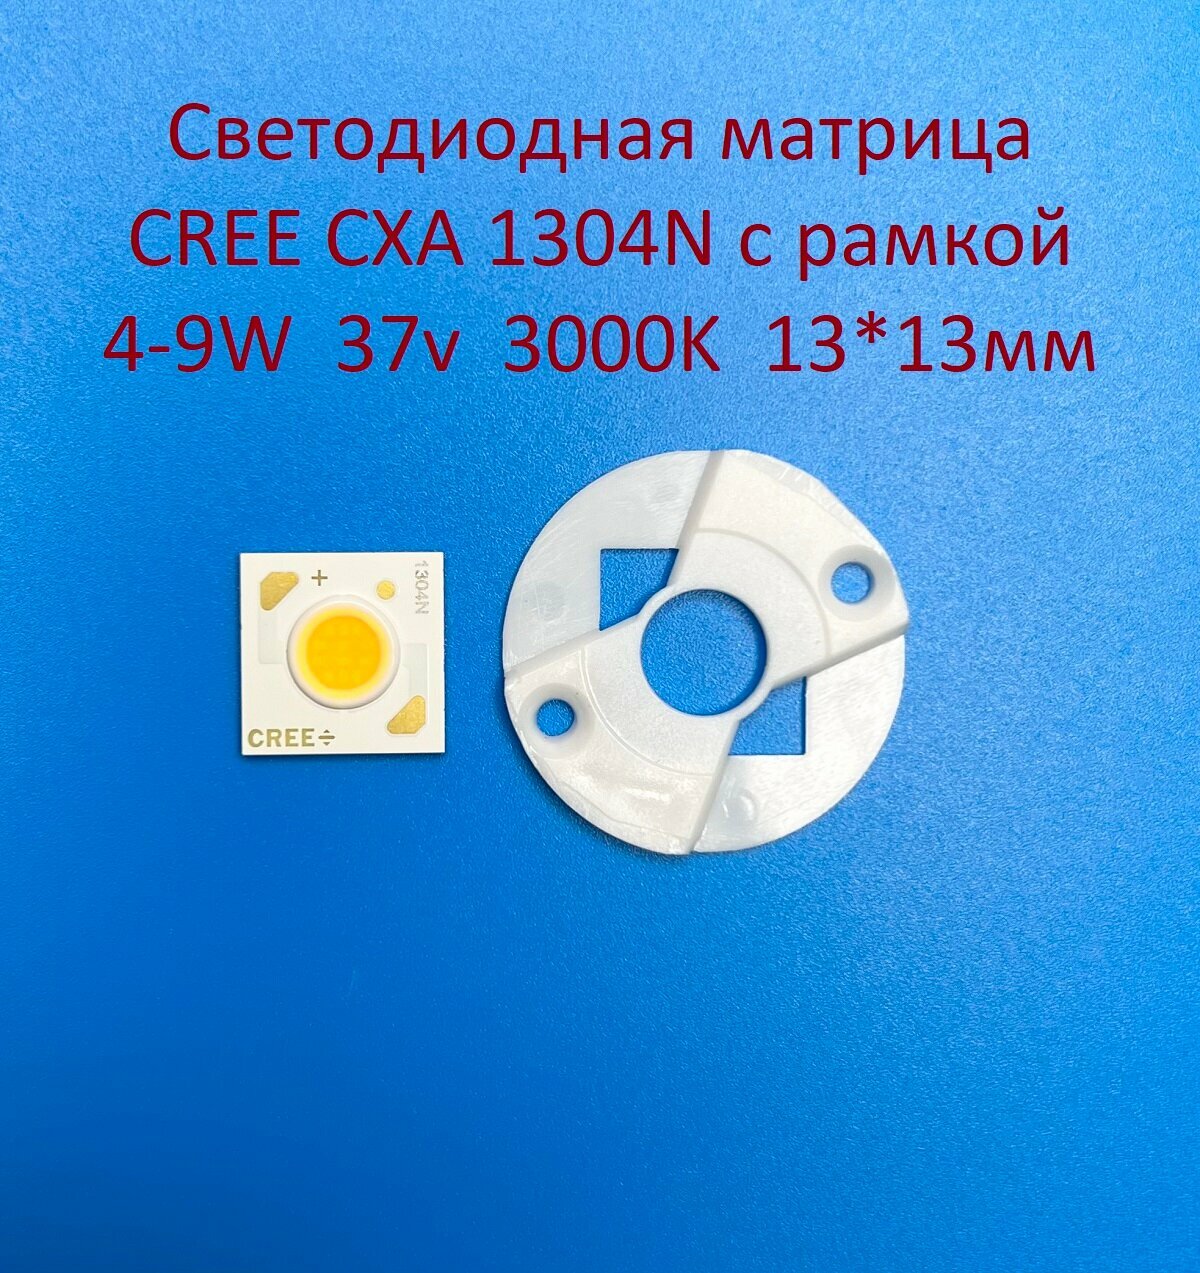 Светодиодная матрица Cree CXA 1304N 4-9W 37v 100-250mA Белая тёплая 3000K 13*13мм с рамкой